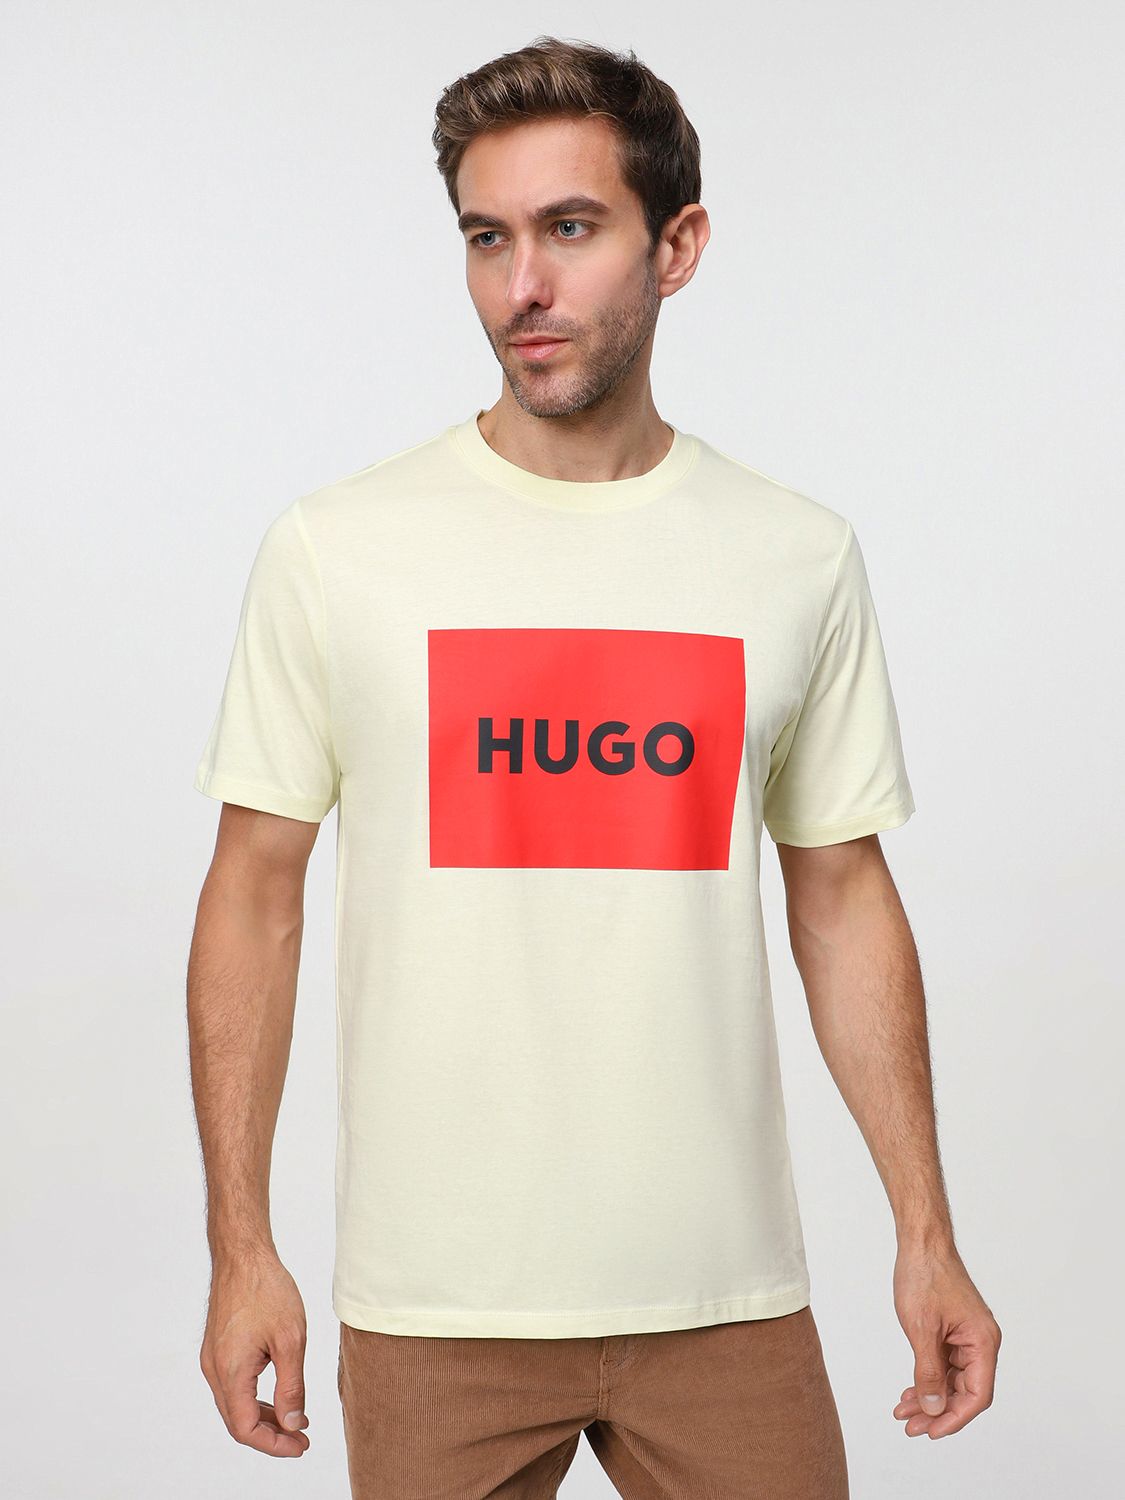 Футболка Хуго. Комплект футболок Hugo Regular. Купить футболку Hugo. Hugo размеры